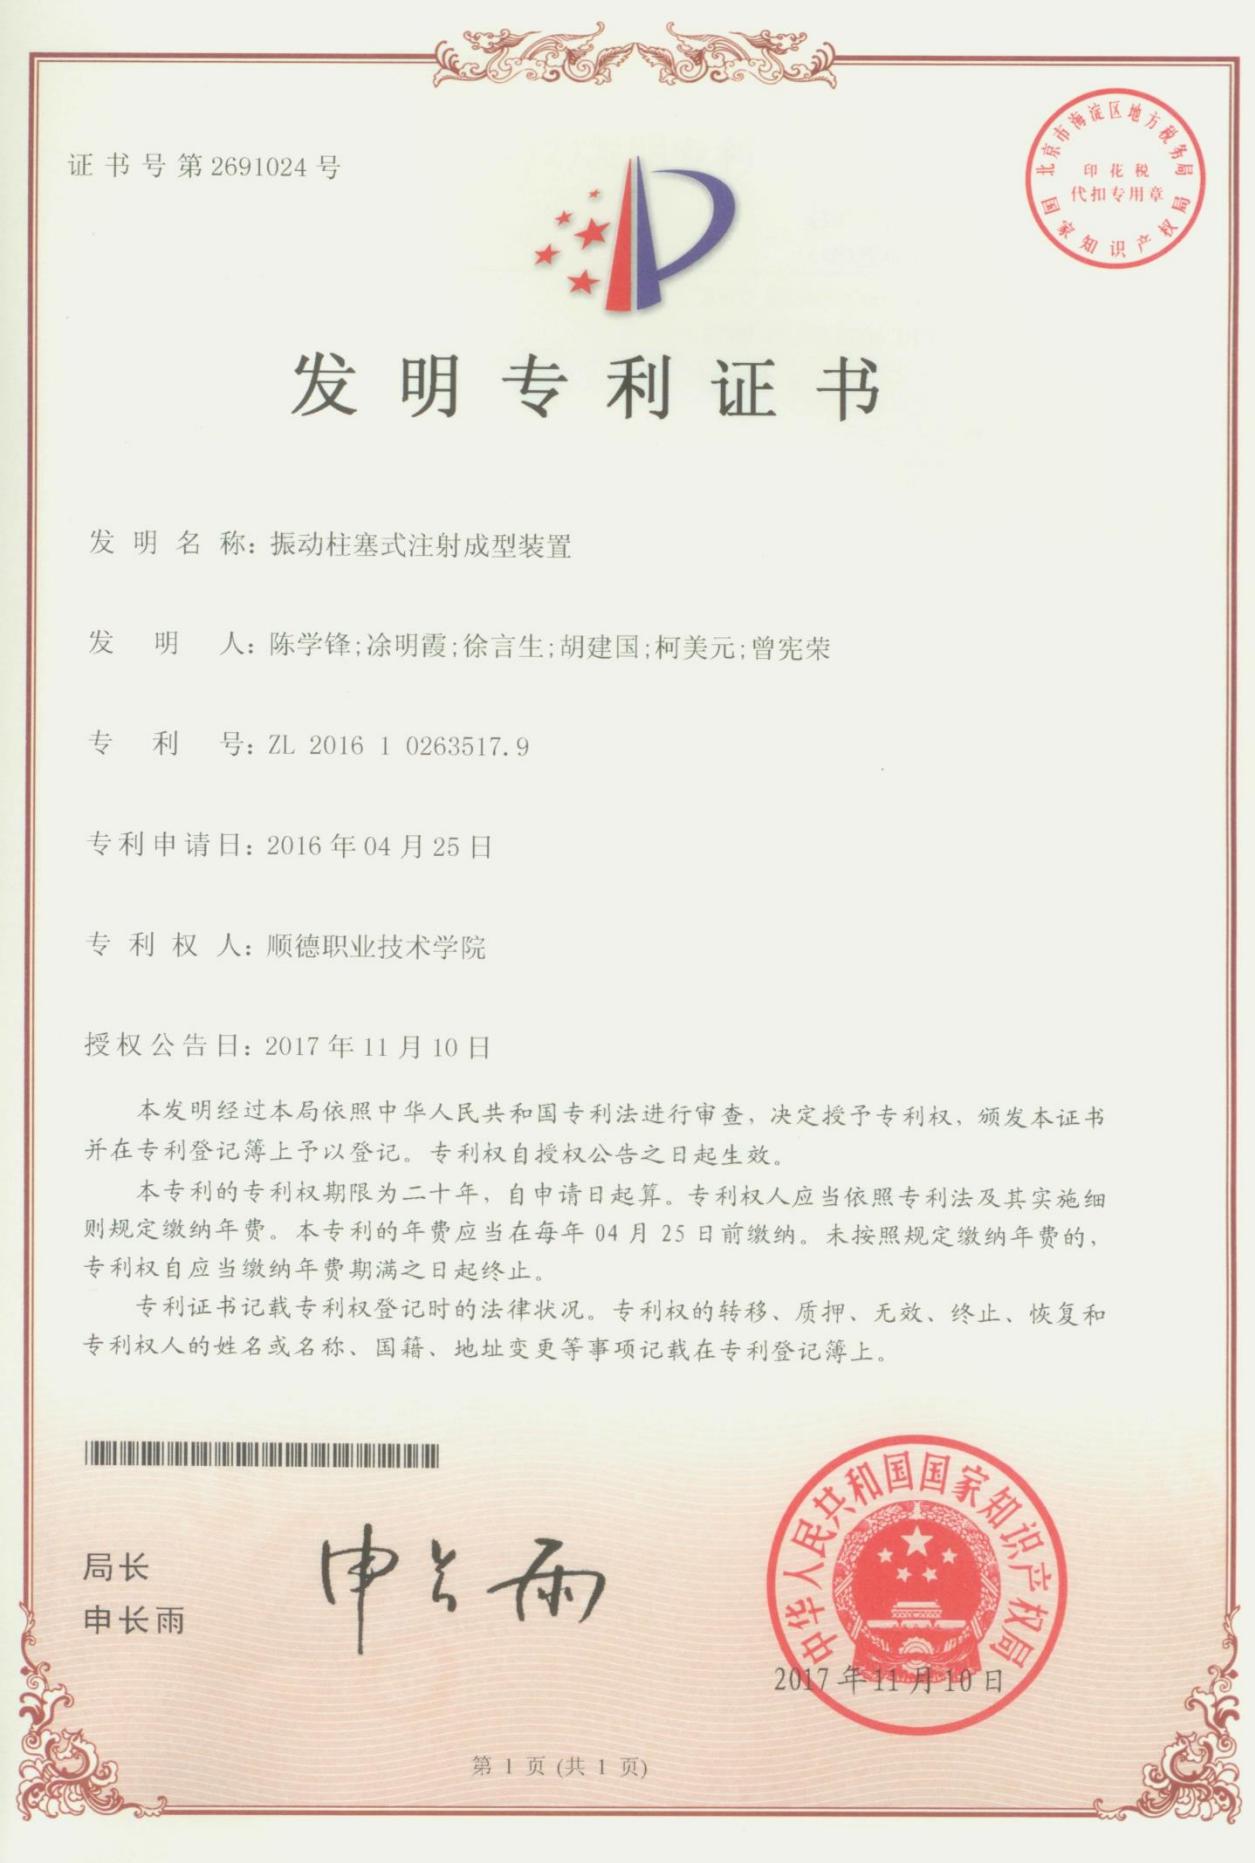 17.振动柱塞式注射成型装置-中国发明专利证书_00.jpg